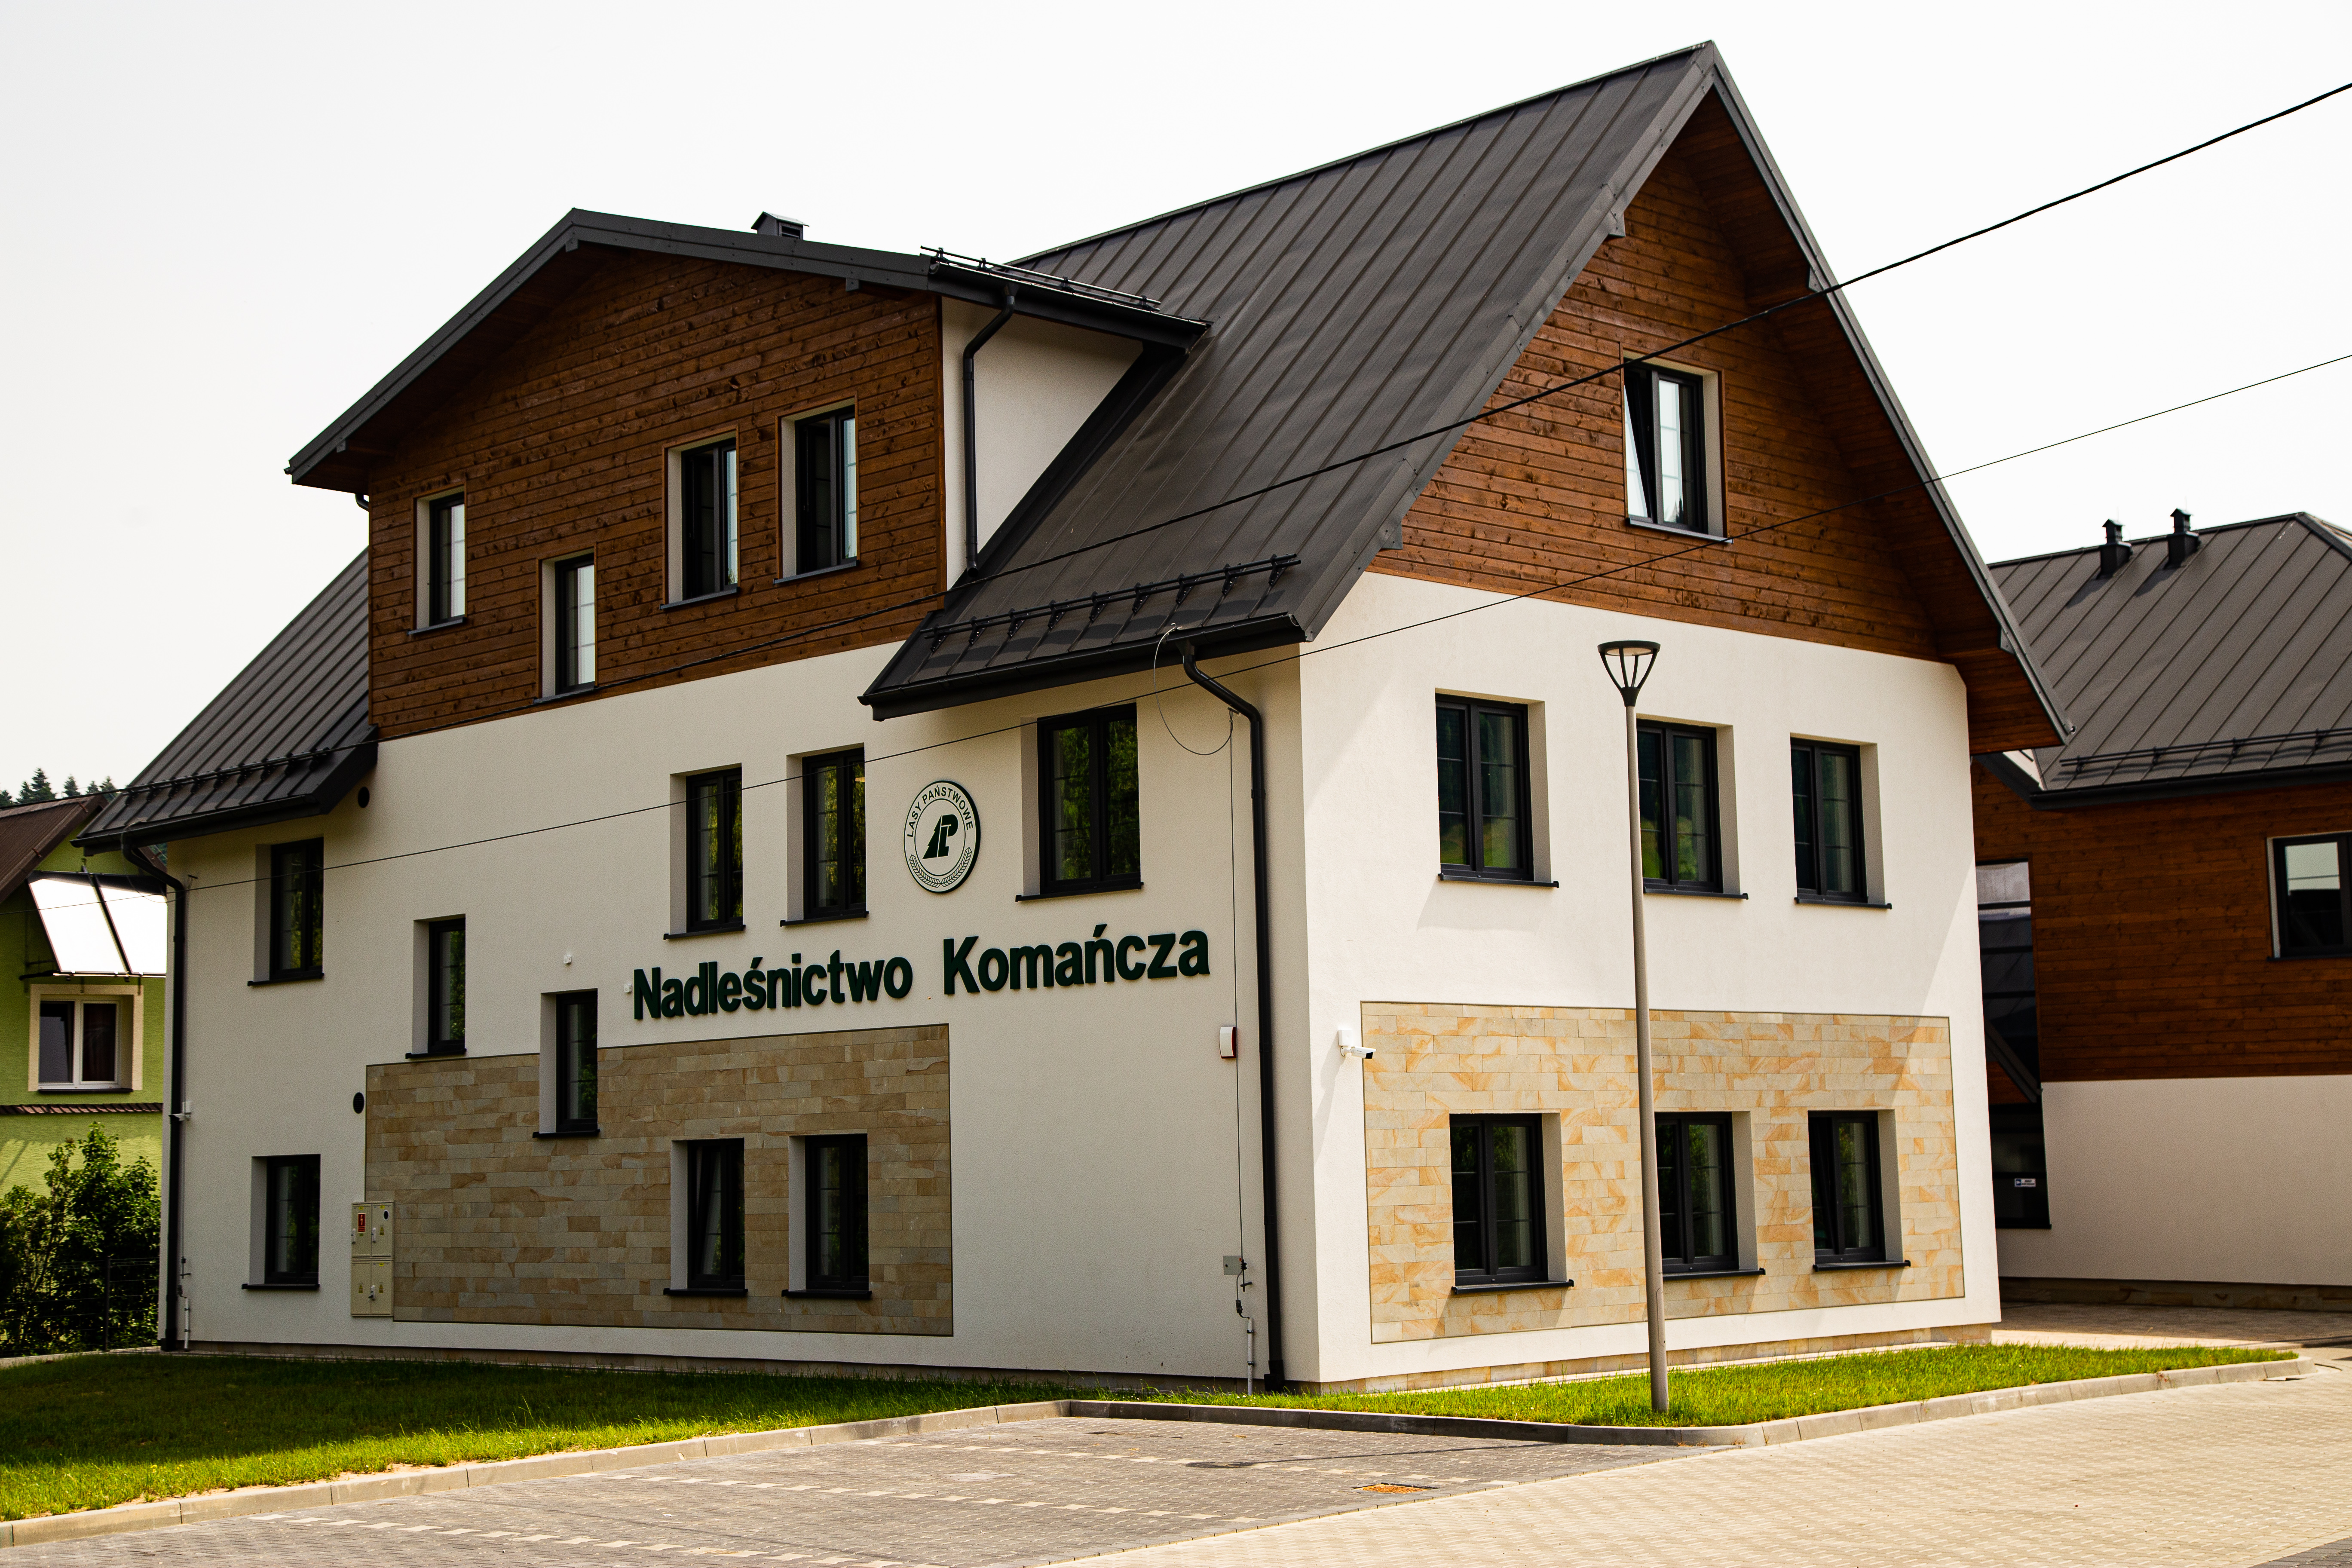 Headquarters Nadleśnictwo Komańcza